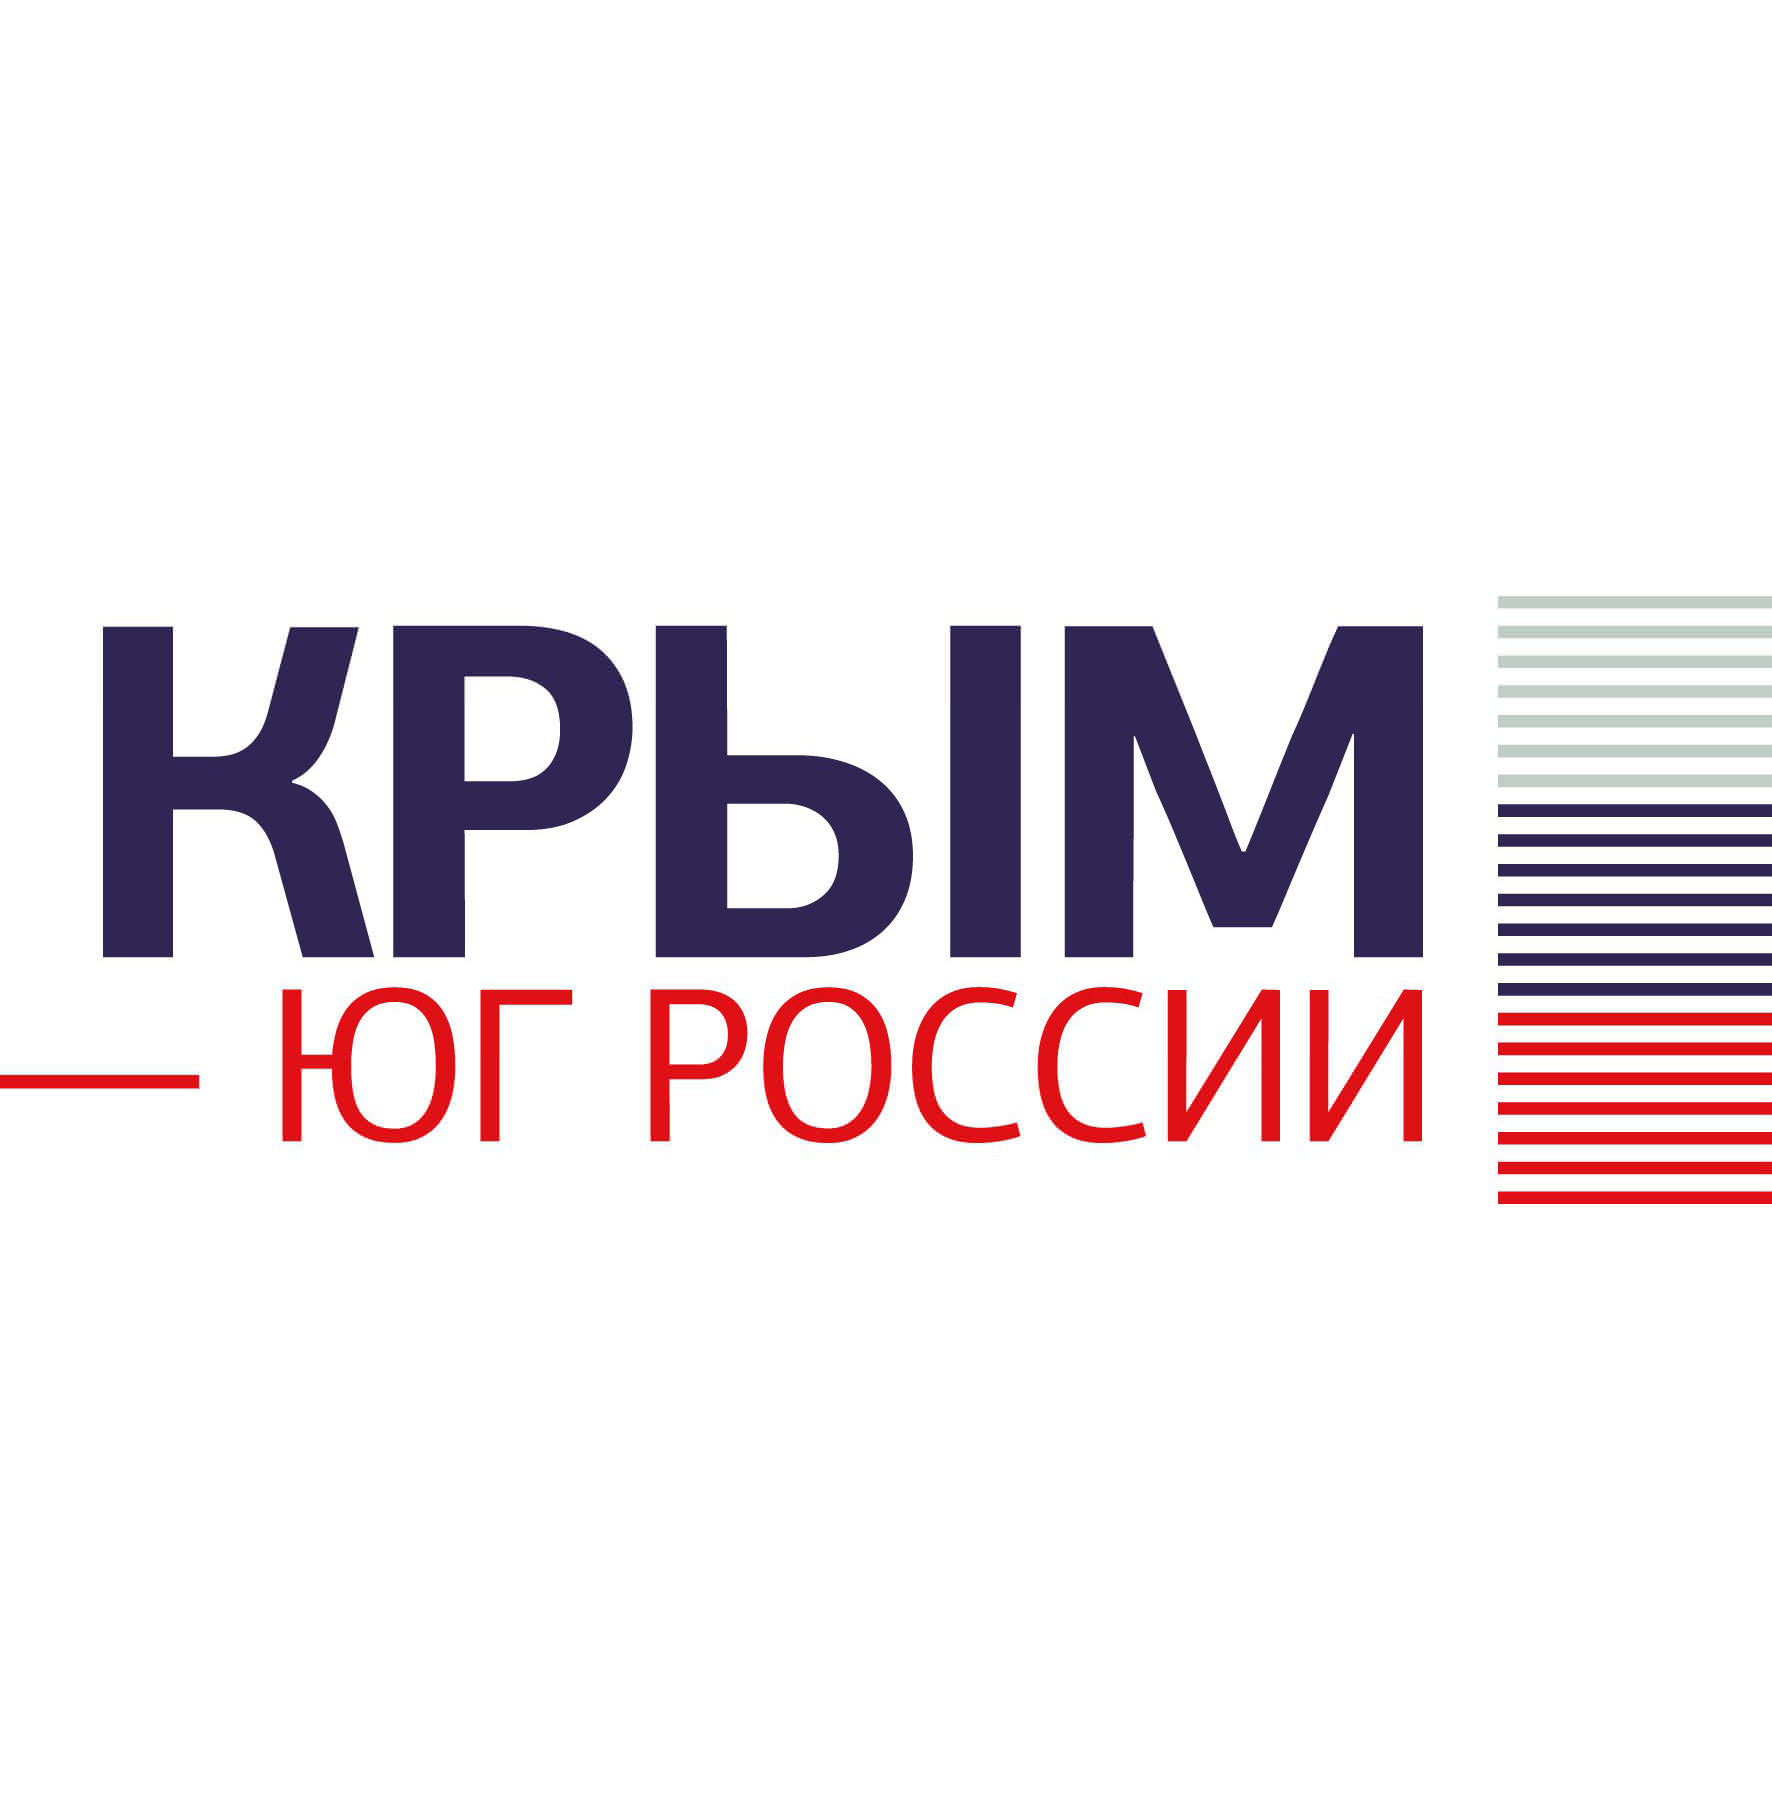 Итоги проведения выставки Крым-Юг России 2016